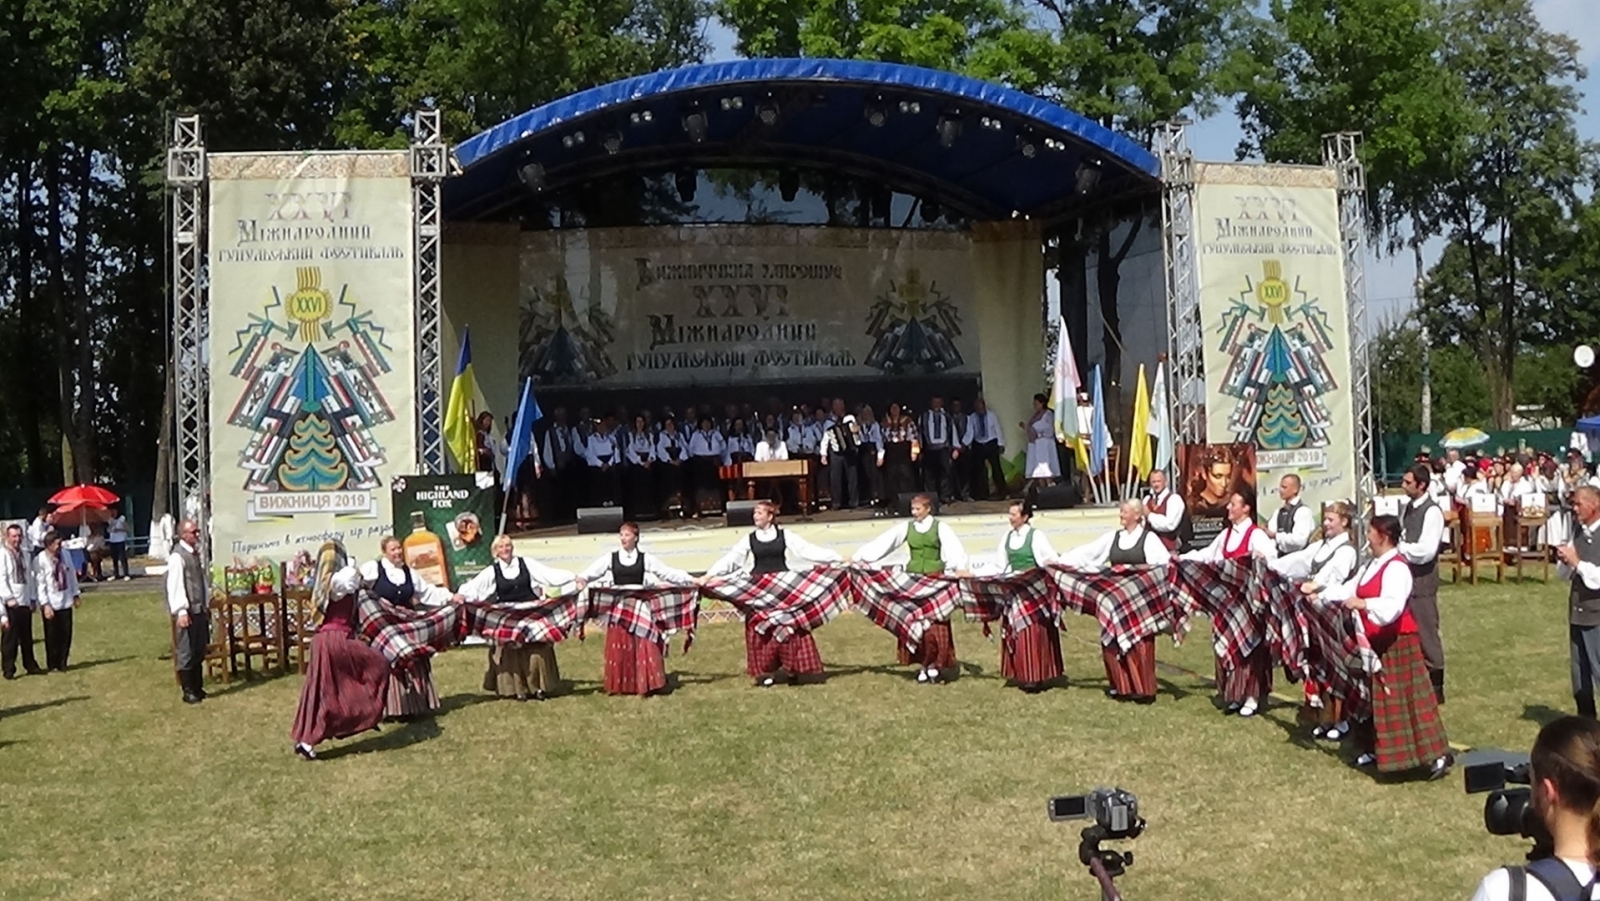 Jēkabpils novada pārstāvji sniedz deju priekšnesumu Gucuļu svētkos Vižnicā